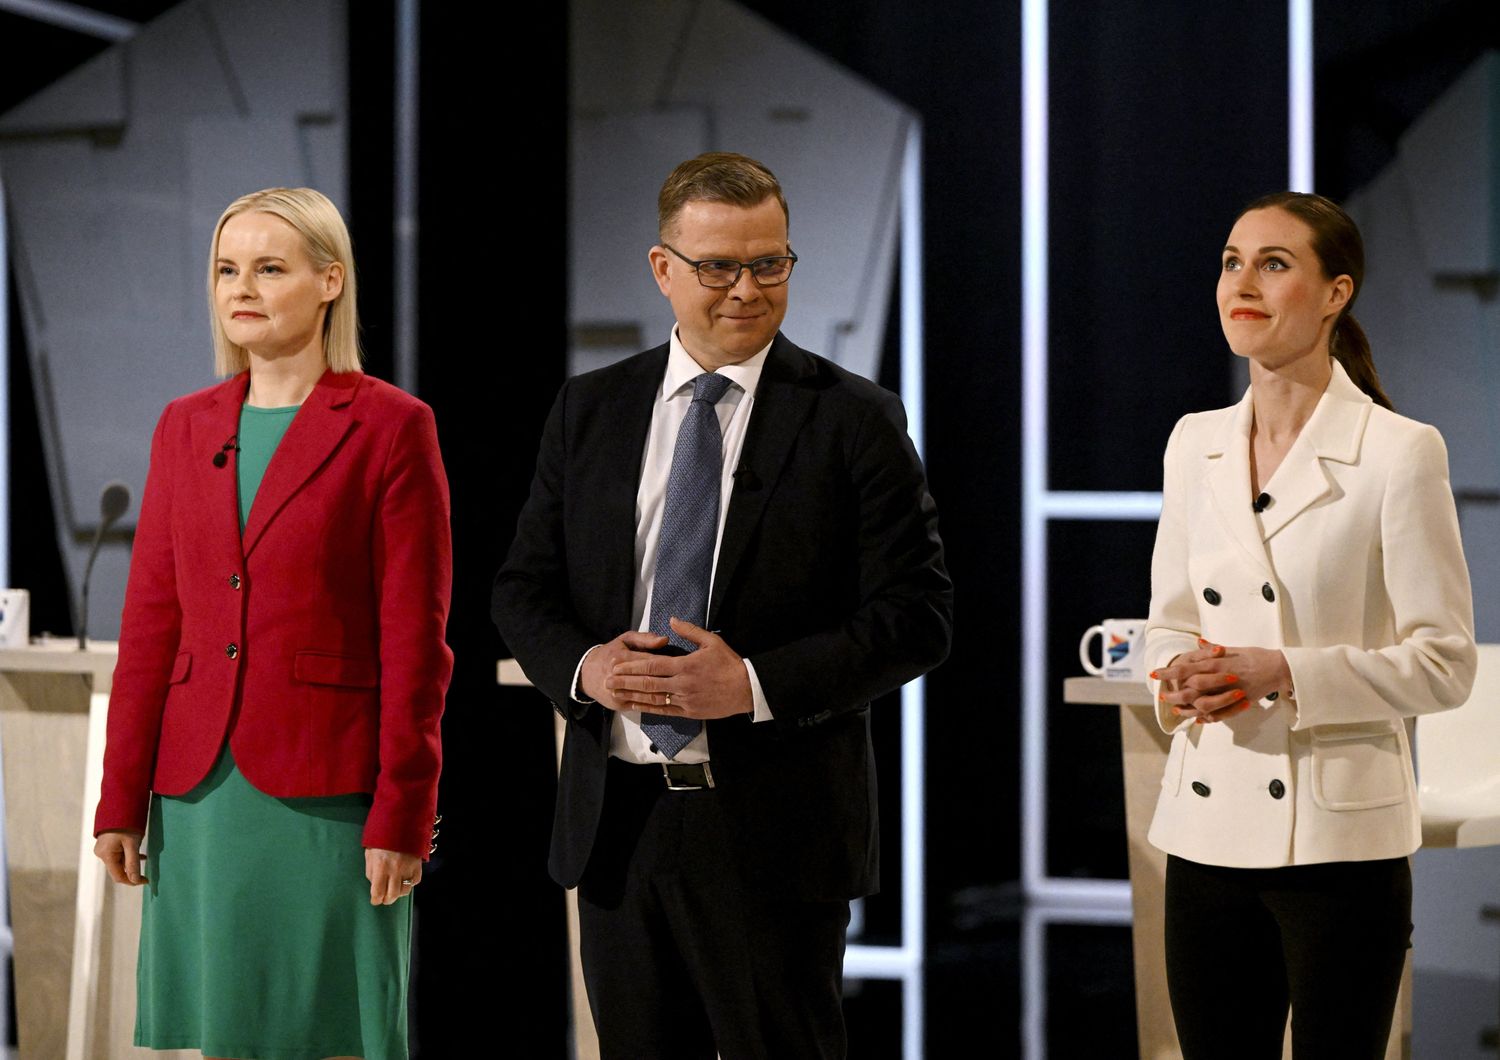 Da sinistra: la leader del Partito Finlandese,  Riikka Purra;&nbsp;Petteri Orpo del Partito della coalizione nazionale; la premier uscente, Sanna Marin &nbsp;